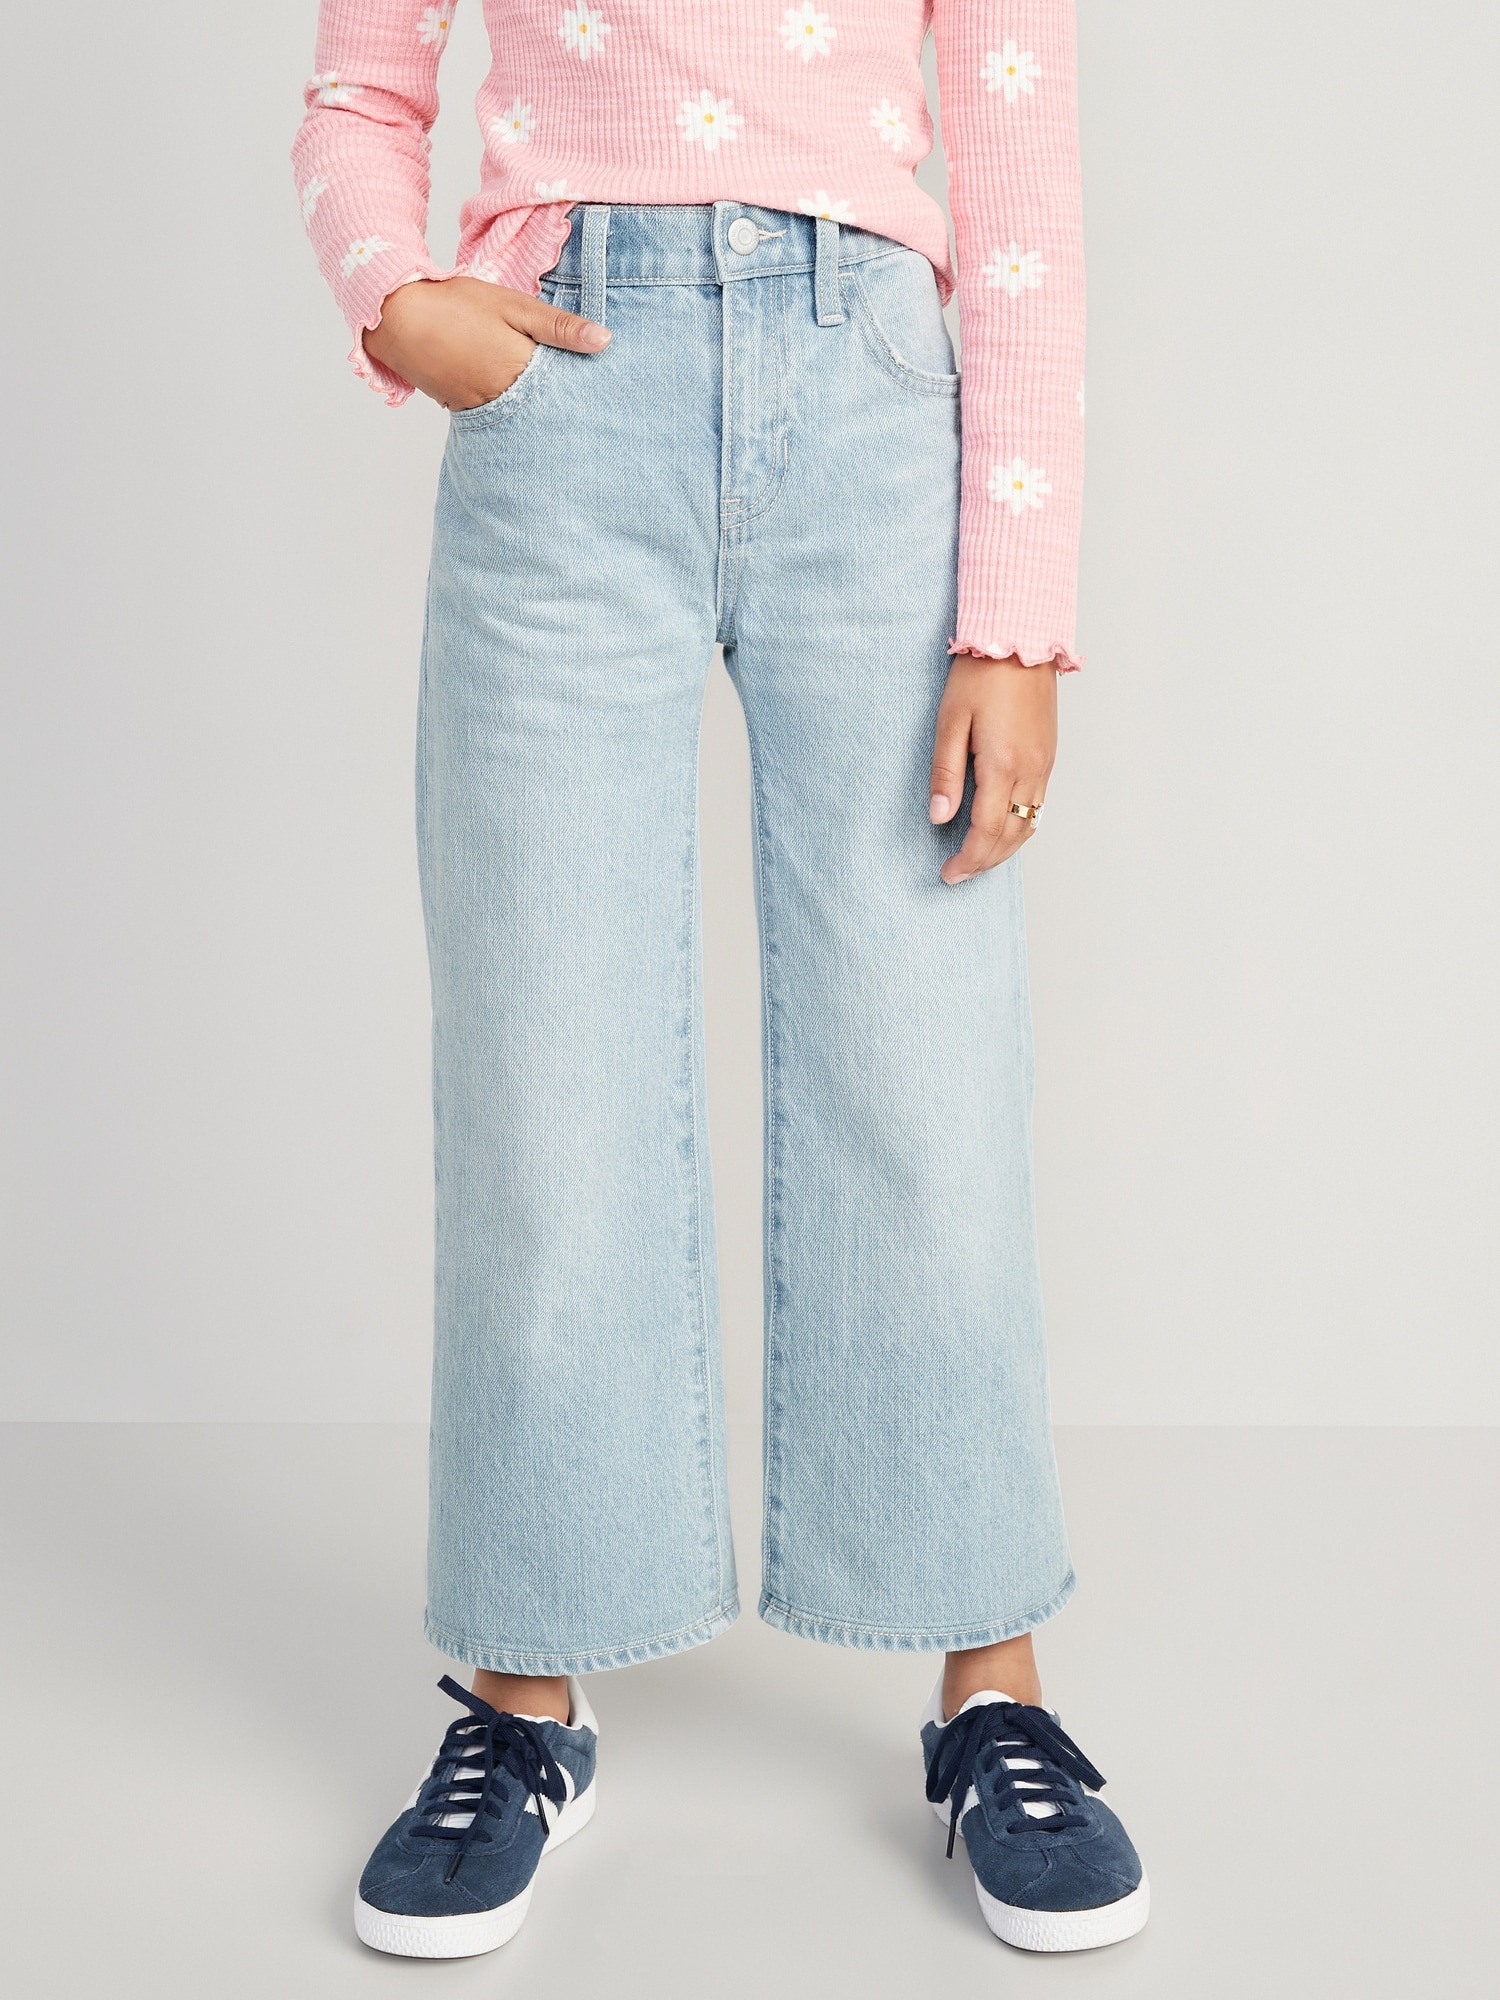 Buy Denim Jeans for Girls – Mumkins-nextbuild.com.vn